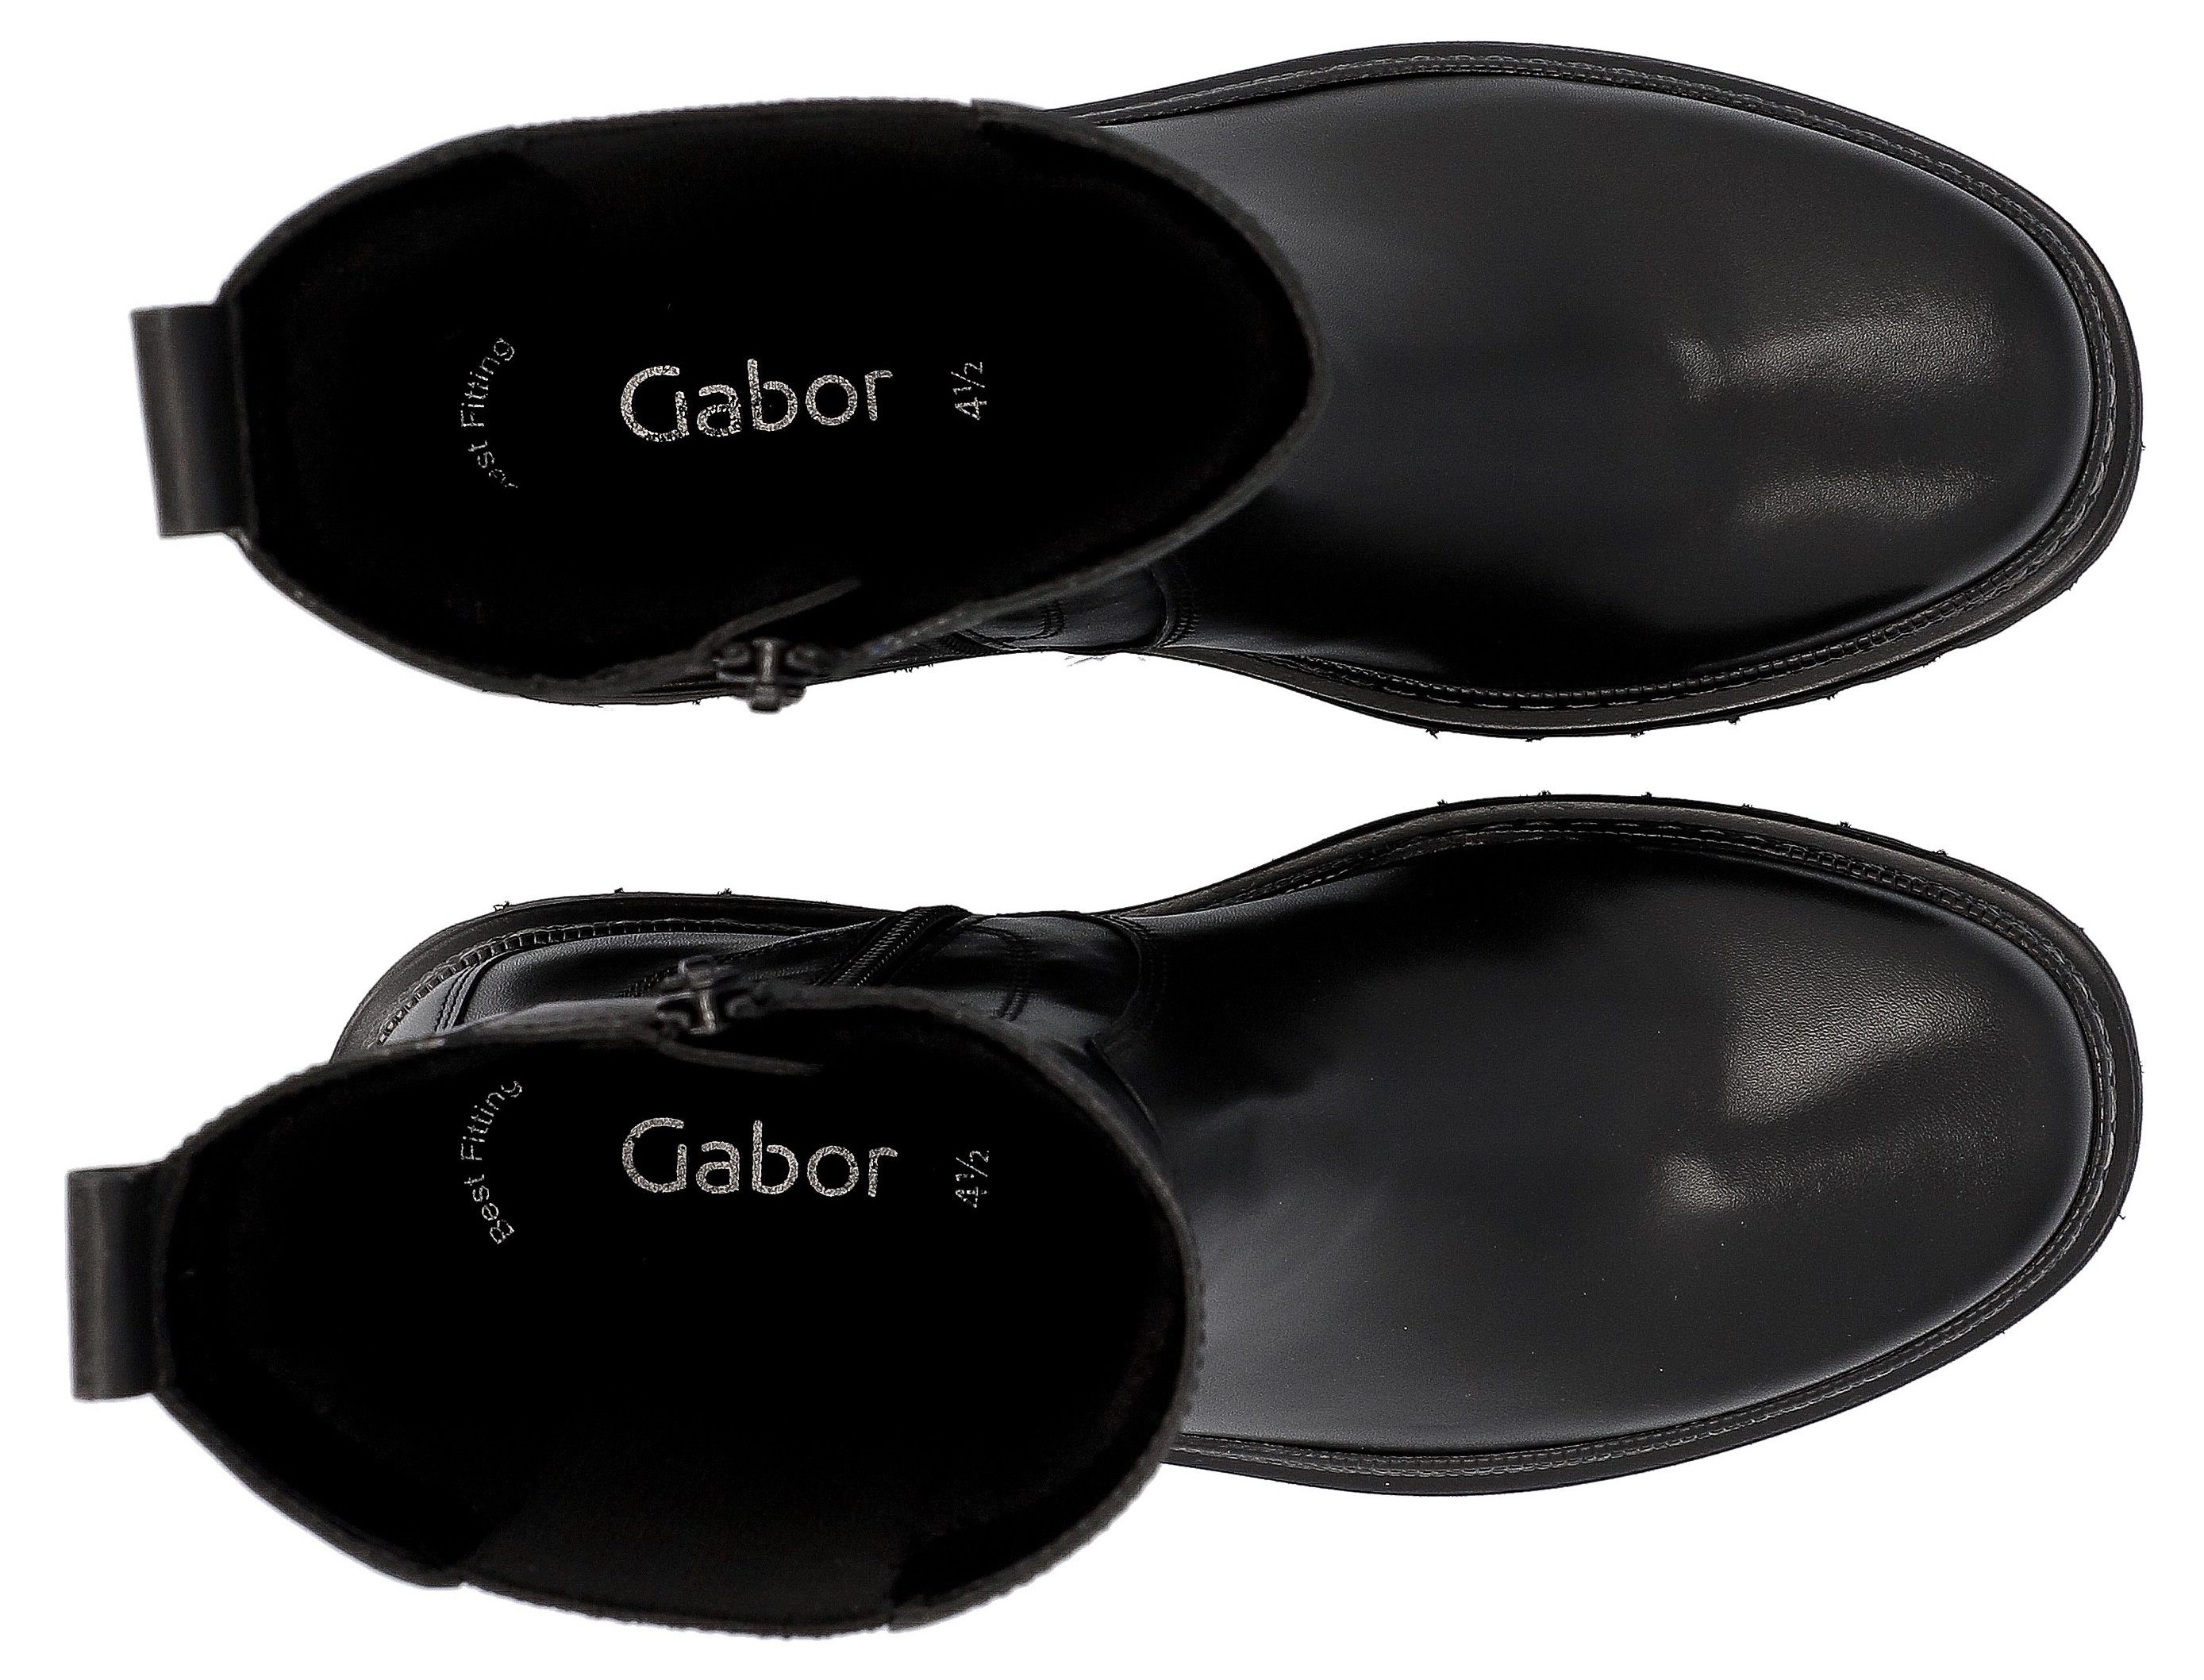 mit Chelseaboots Fitting schwarz-weiß Ausstattung Gabor Best